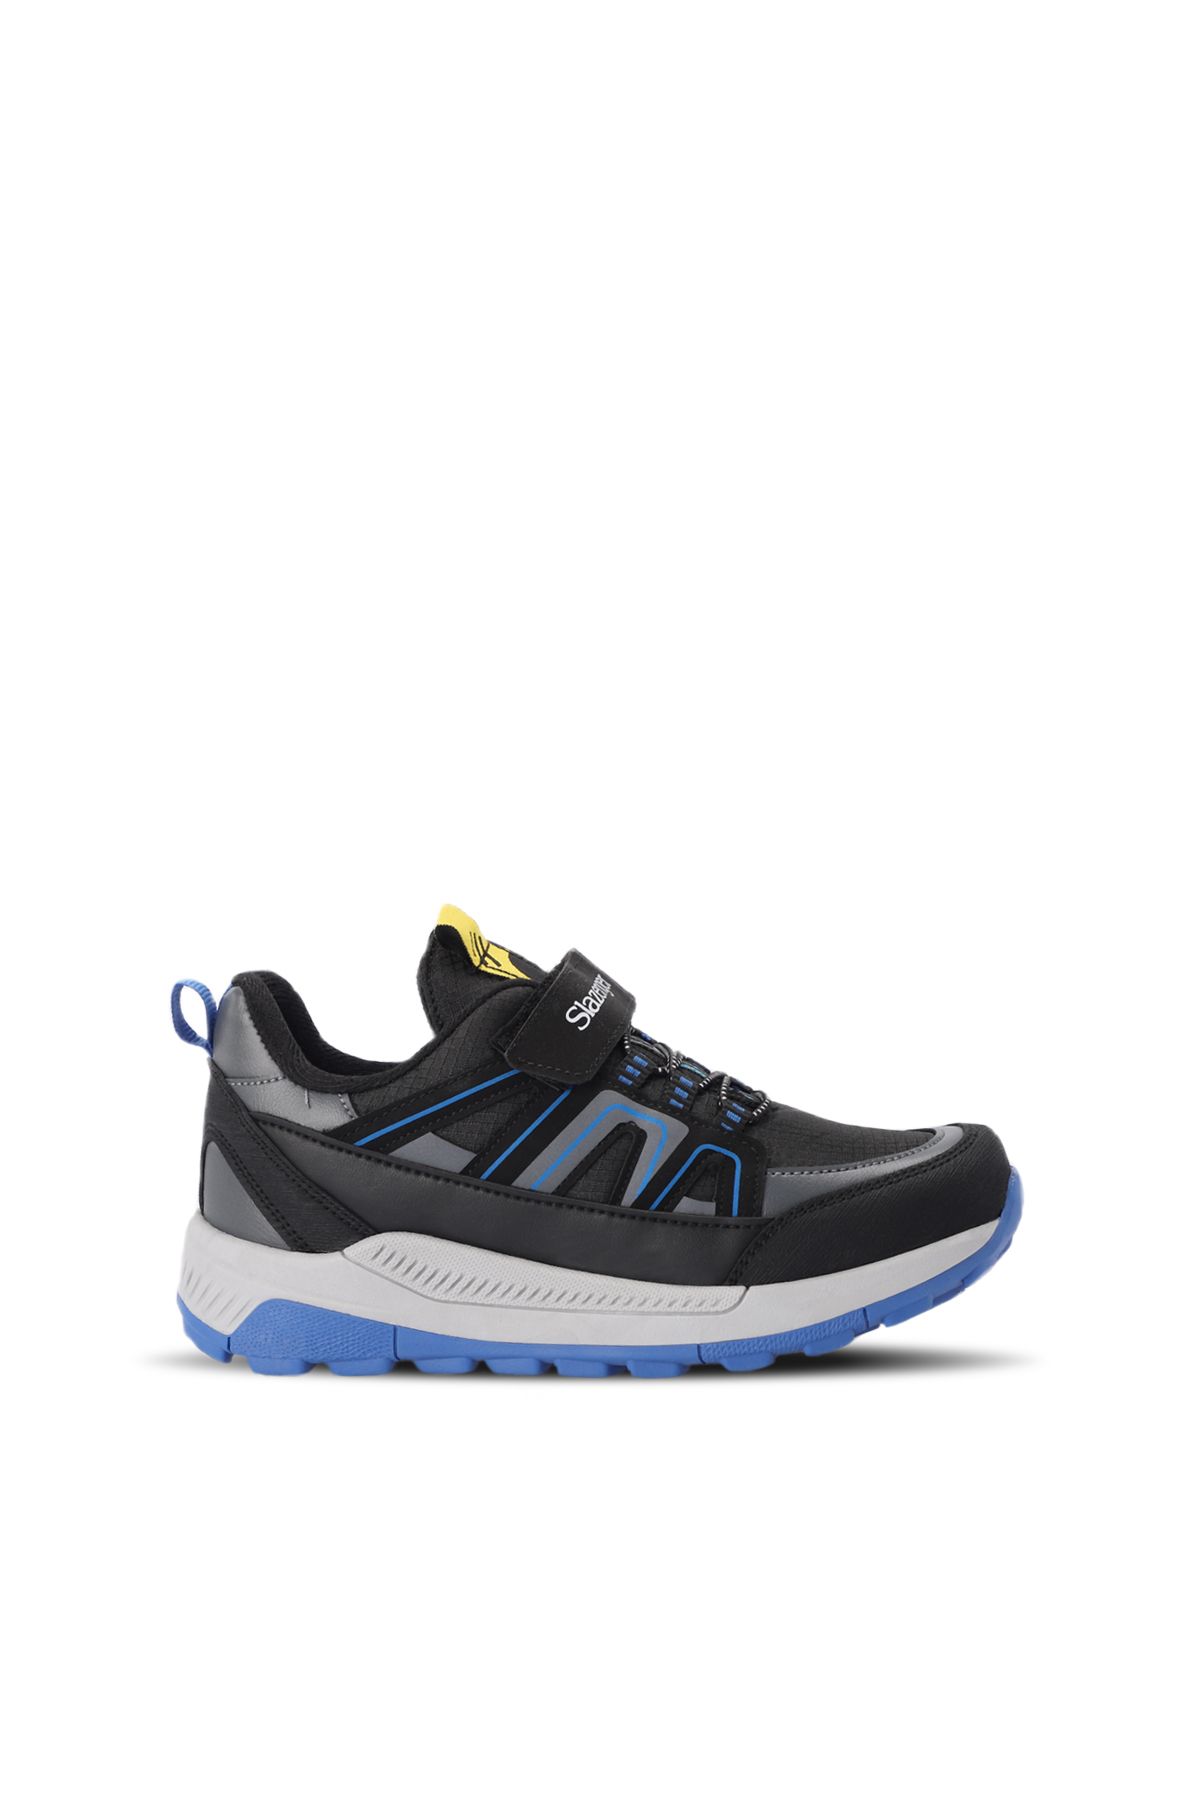 Slazenger KROSS Sneaker Erkek Çocuk Ayakkabı Siyah / Saks Mavi